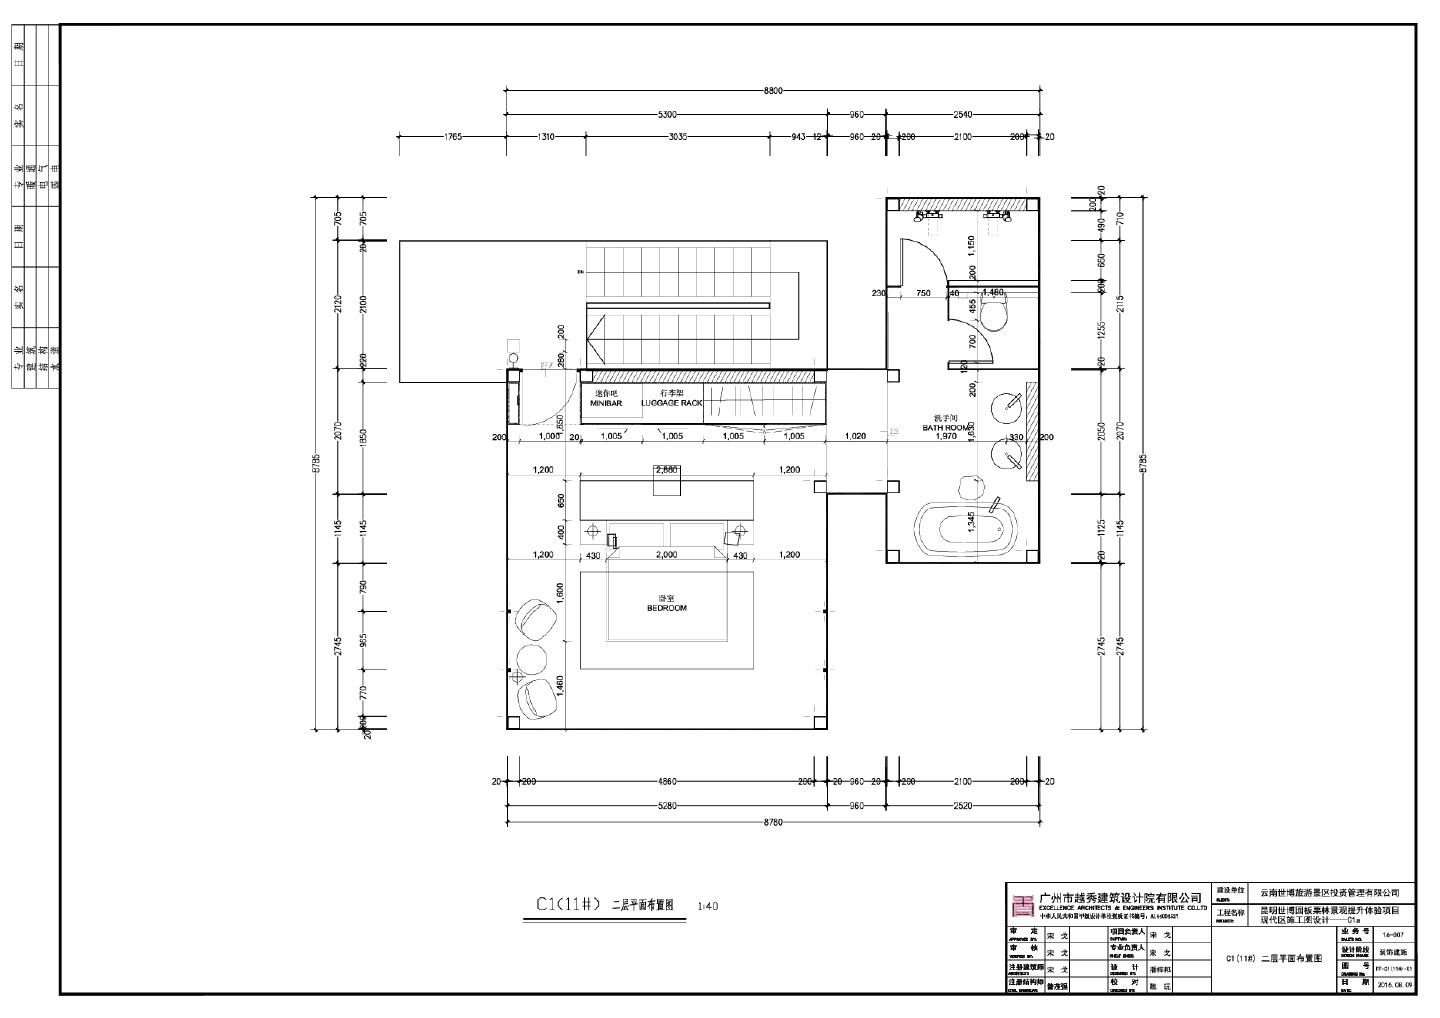 某某建筑C1(11) 二层平面布置图CAD图